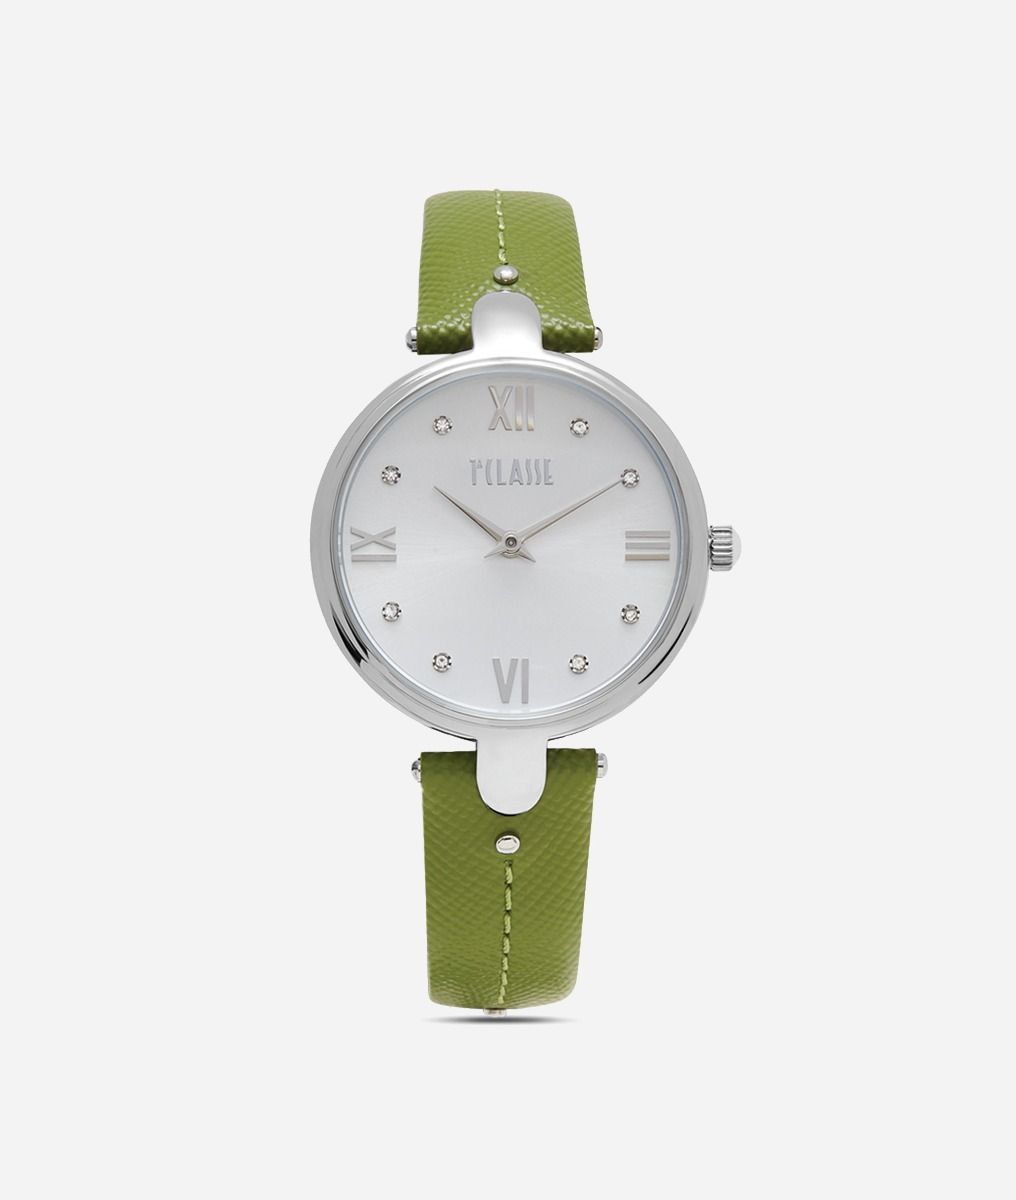 Santorini orologio con cinturino in pelle stampa saffiano Prato,front